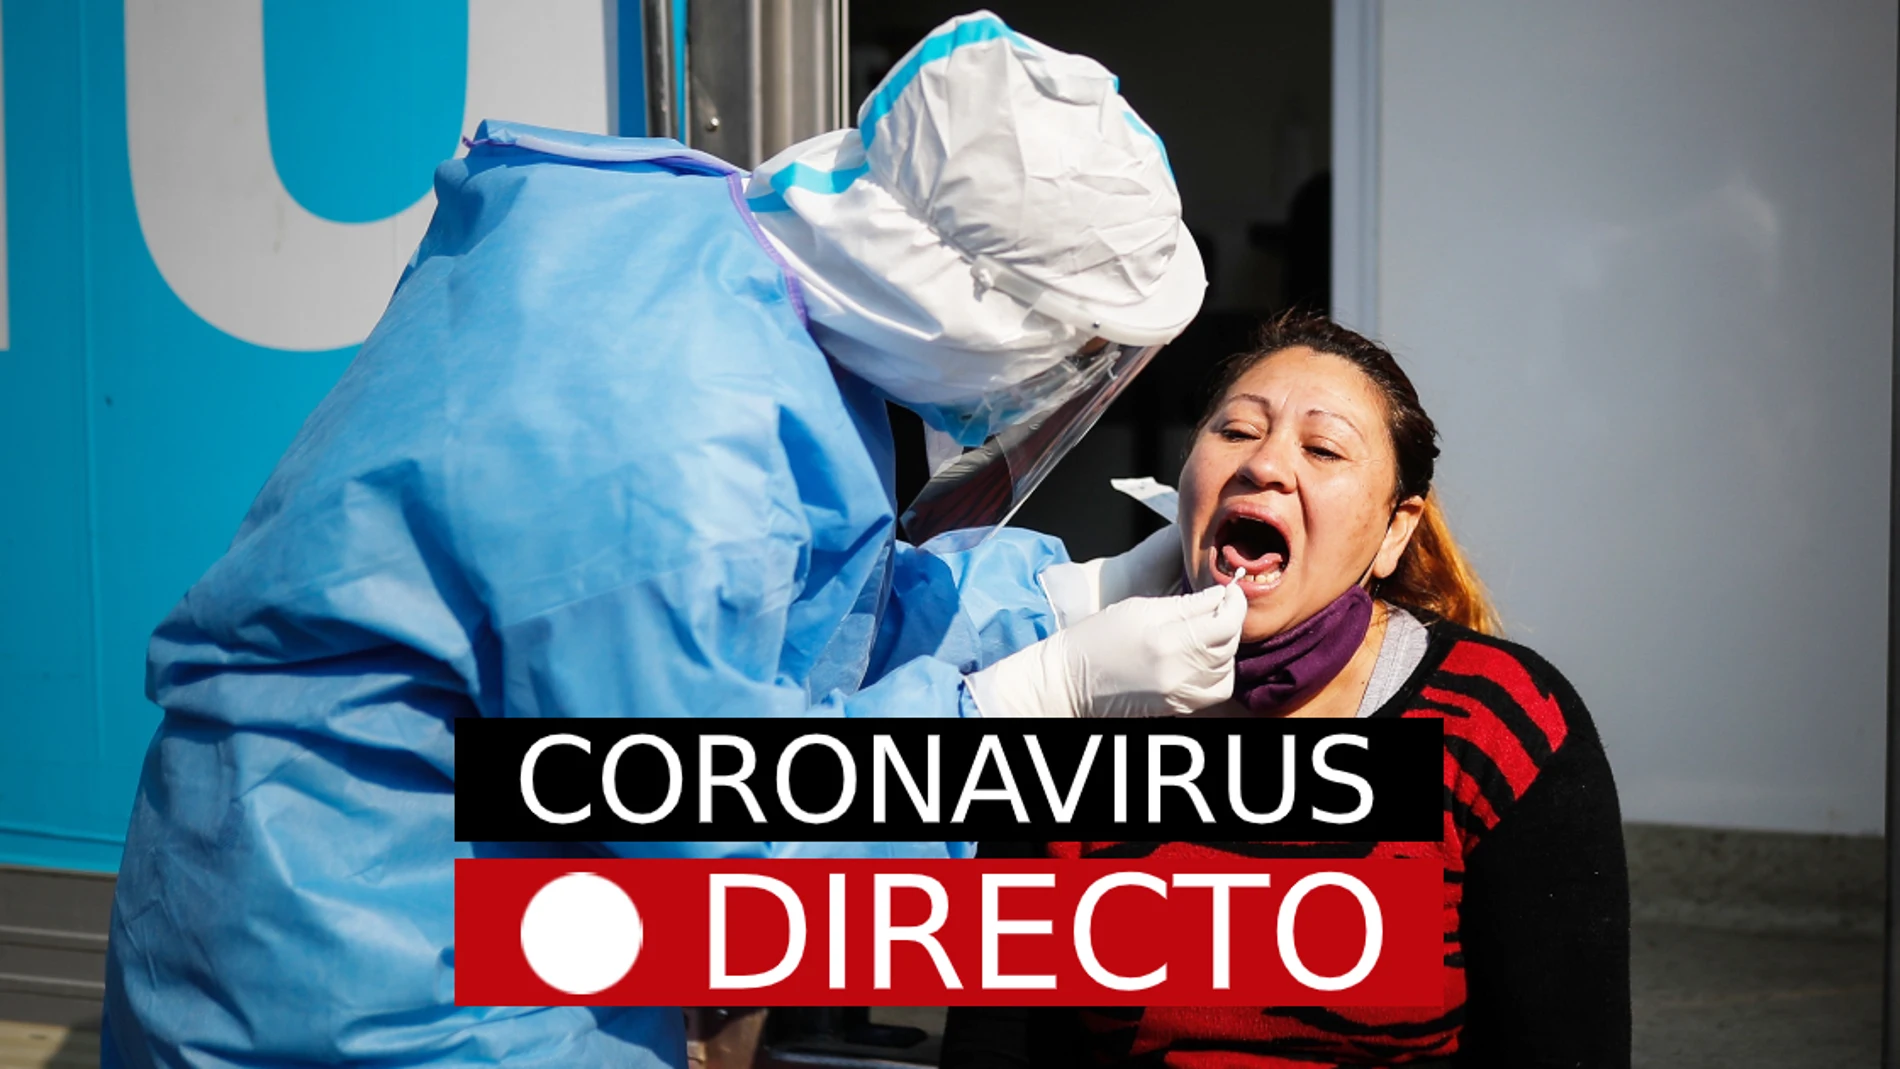 Coronavirus España | Cierres perimetrales por el puente de Diciembre, medidas de Navidad y noticias del COVID-19 | Directo